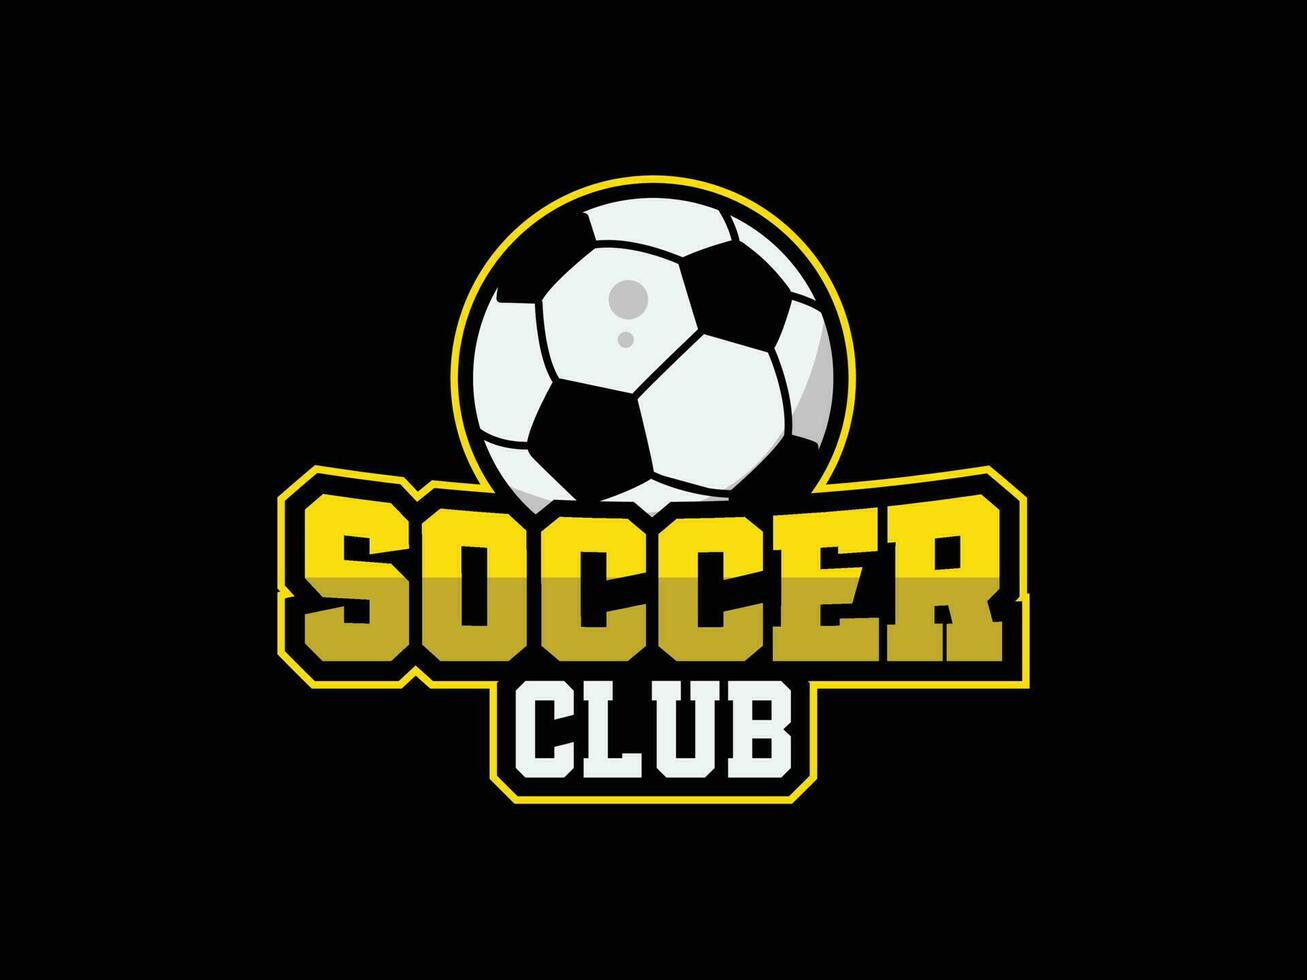 Vector football club logo, emblem and soccer league vector editable text template